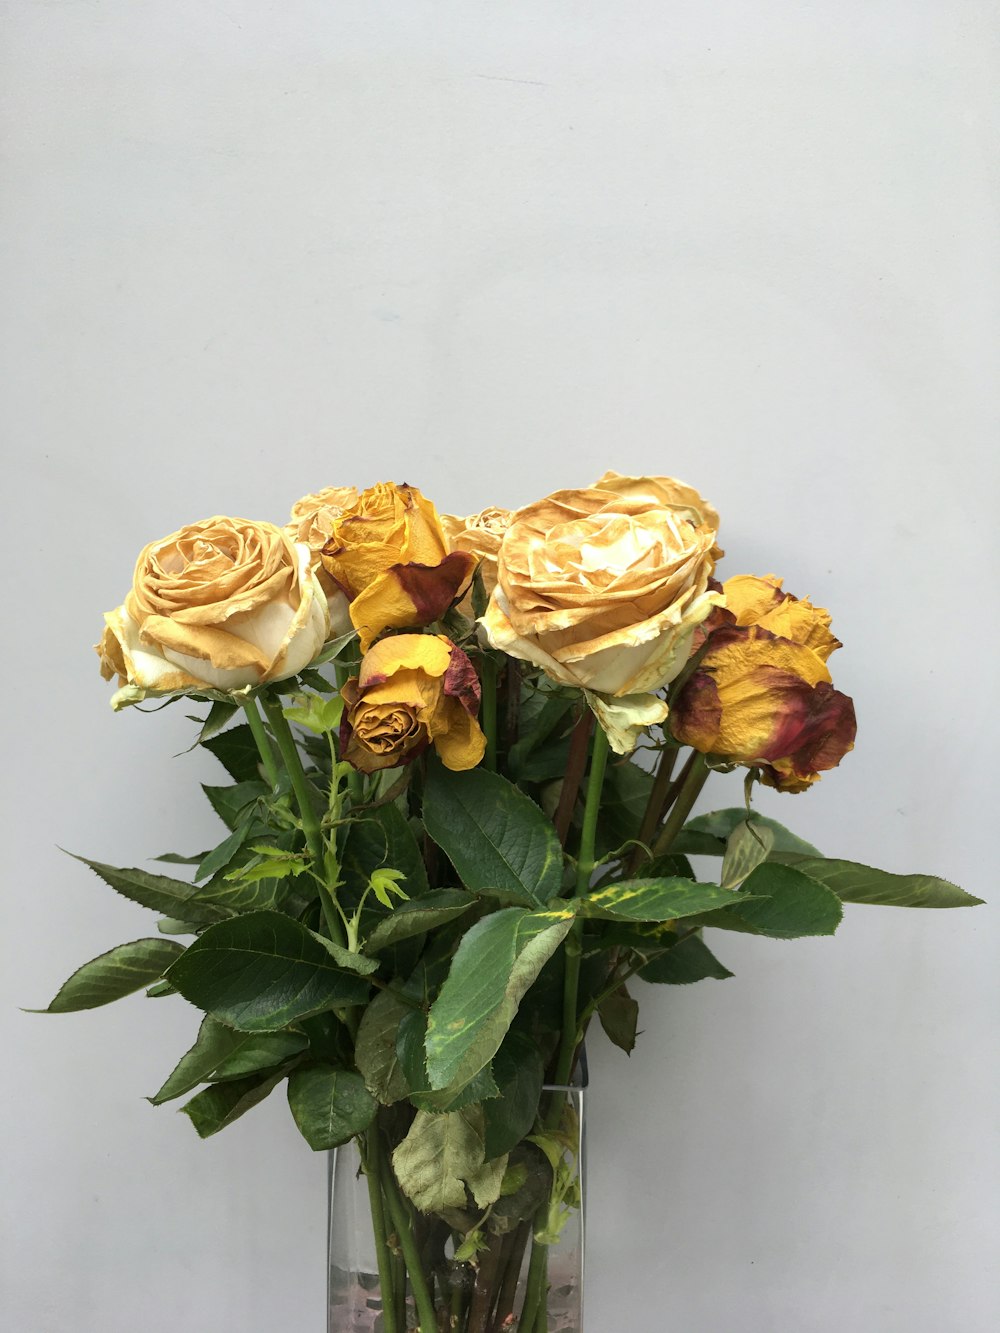 透明なガラスの花瓶に描かれた黄色いバラ